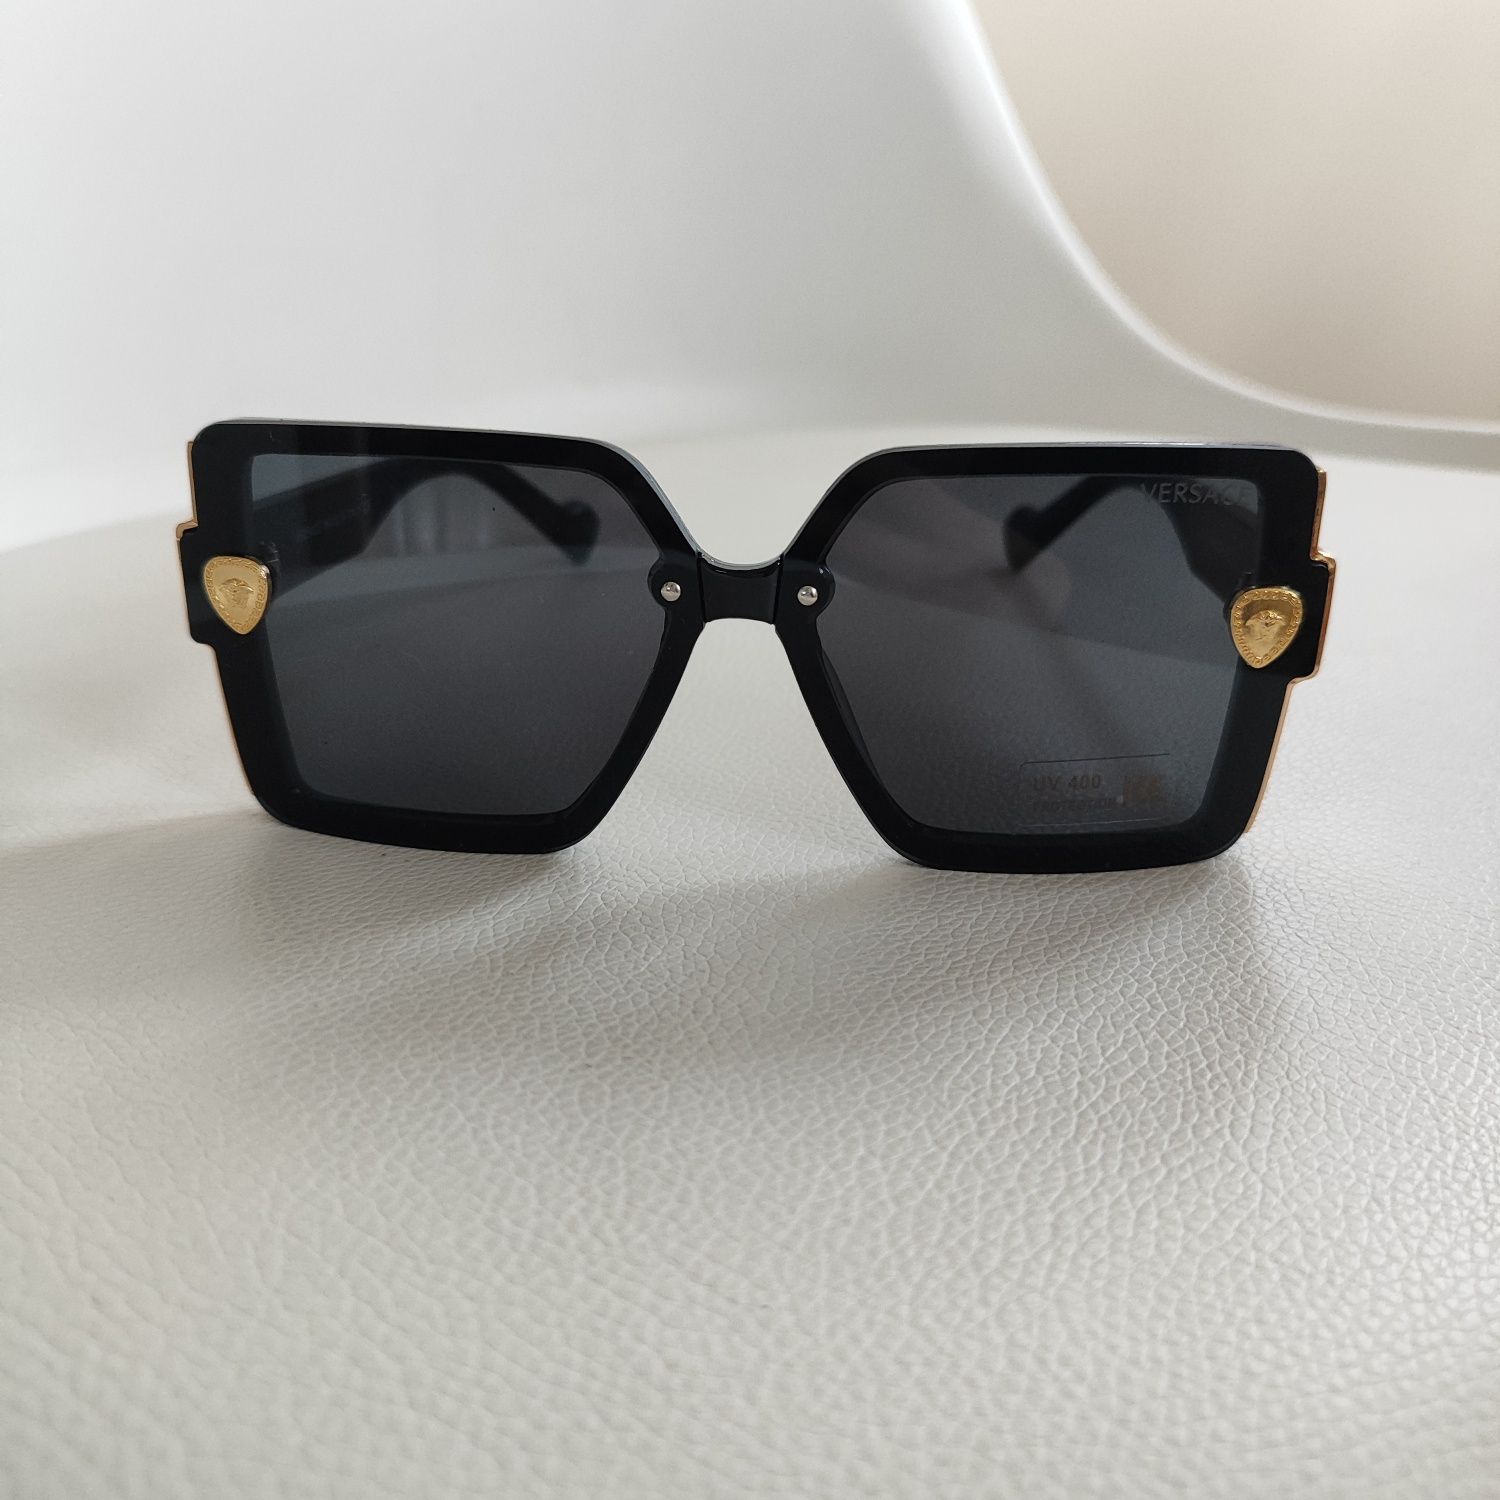 Okulary damskie okularki UV400 ochrona Versace czarne meduza